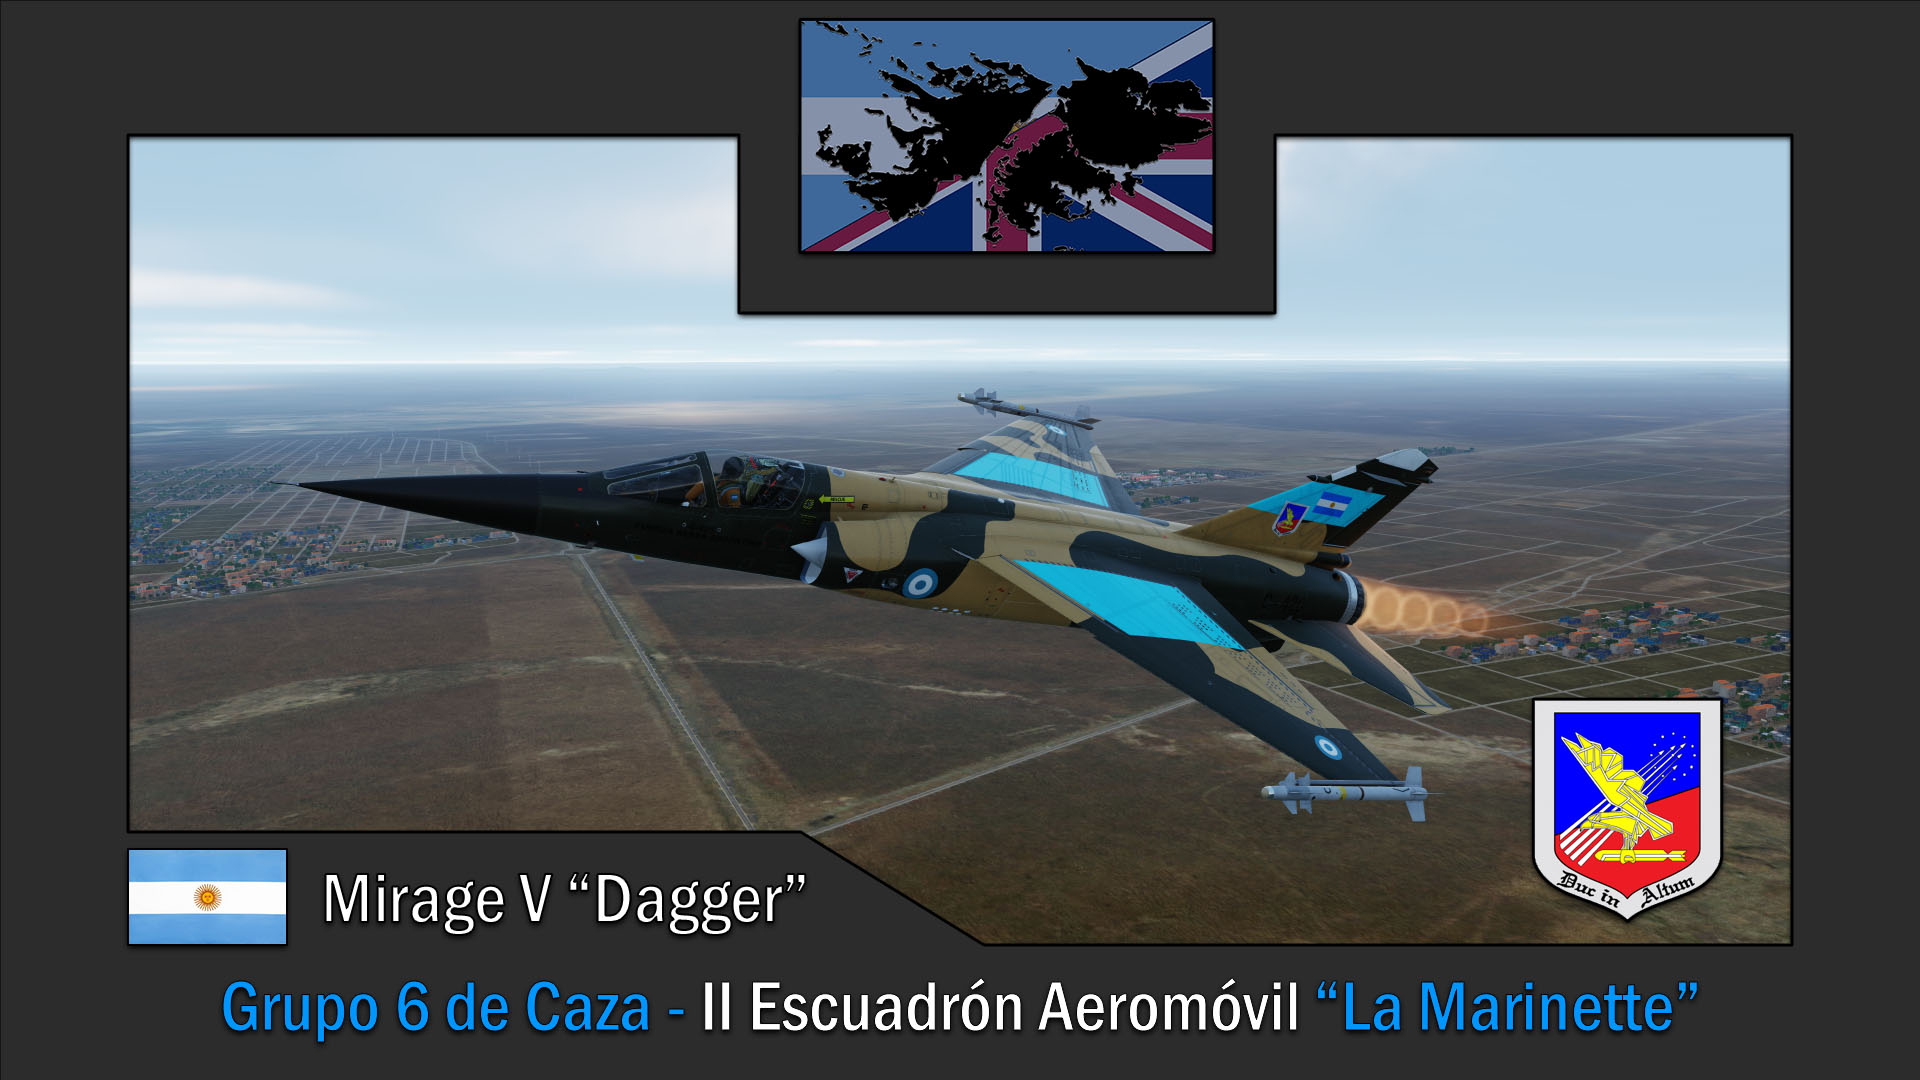 Mirage V "Dagger" Grupo 6 de Caza 1982